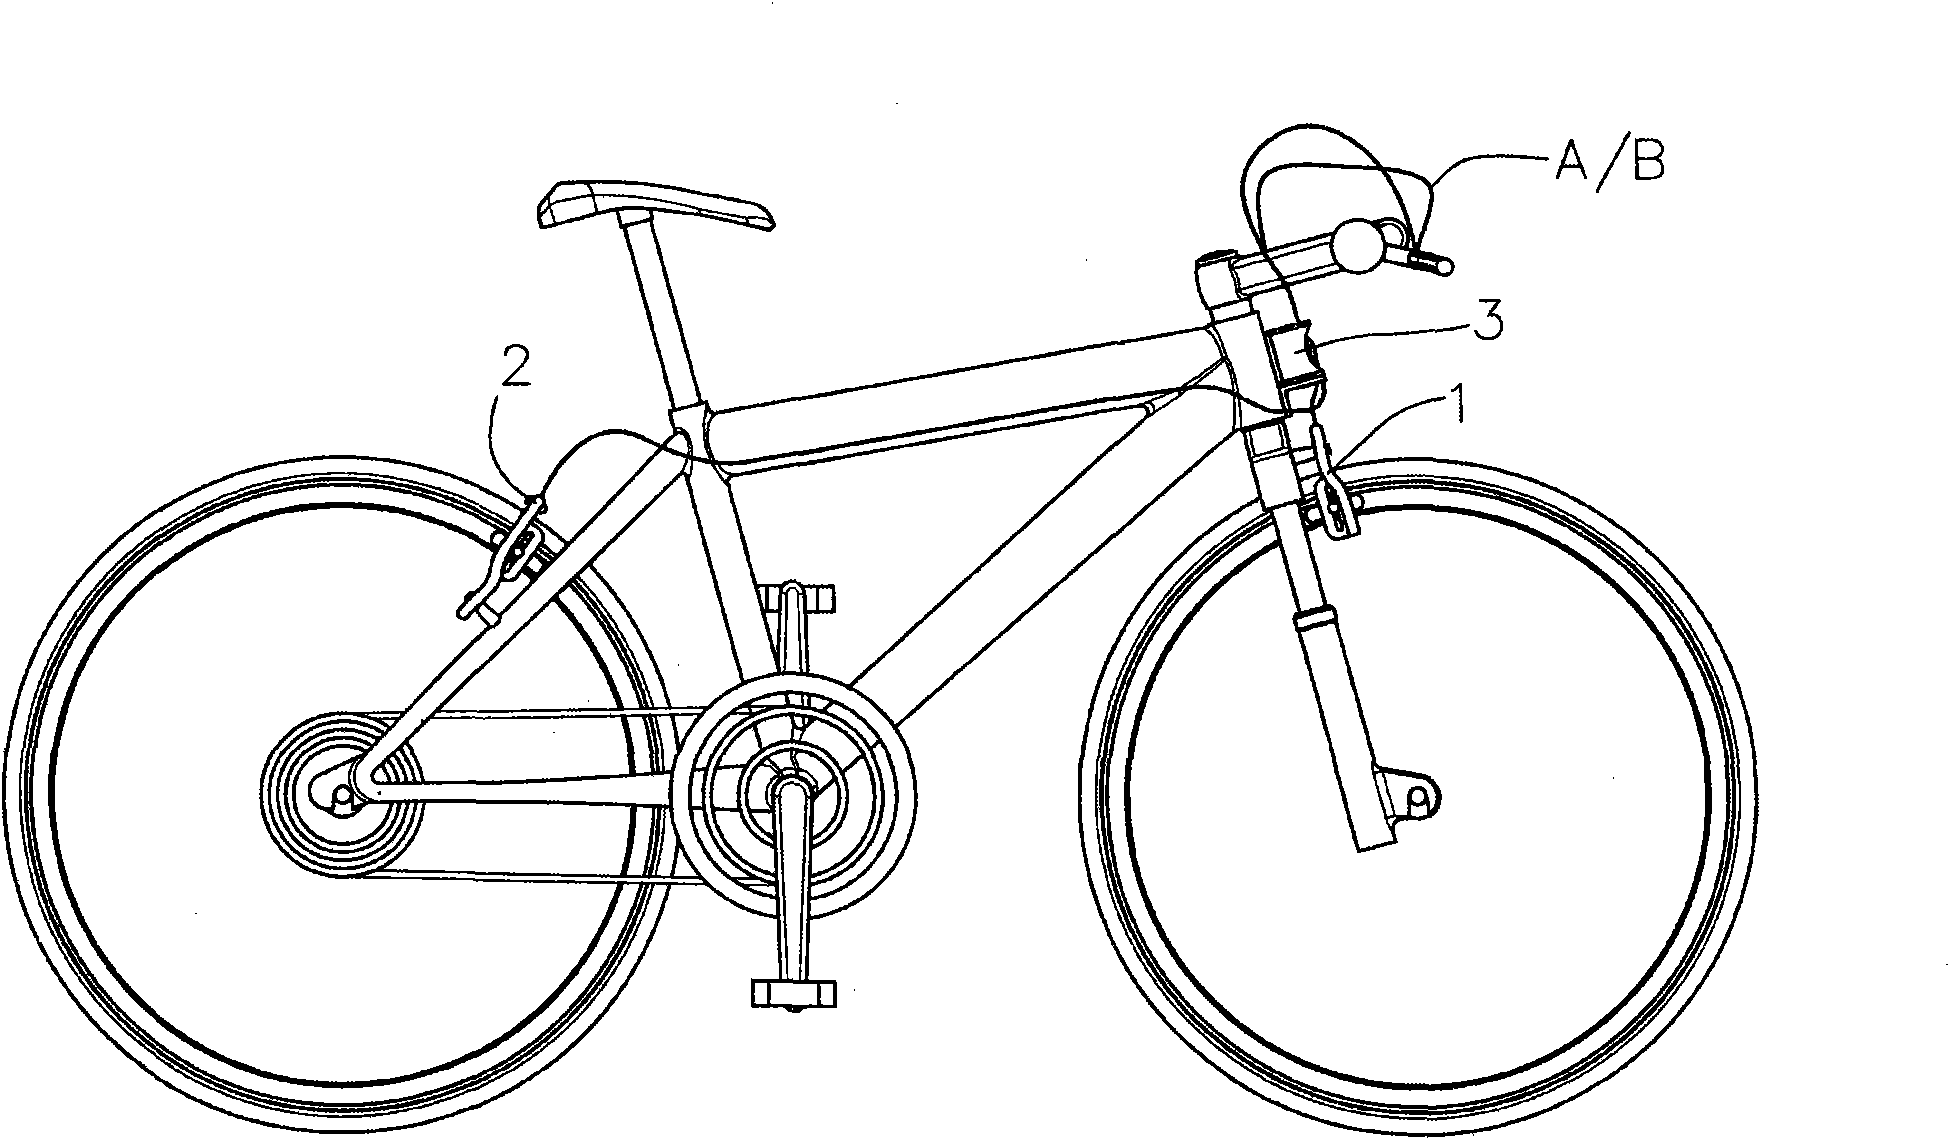 Brake linkage mechanism